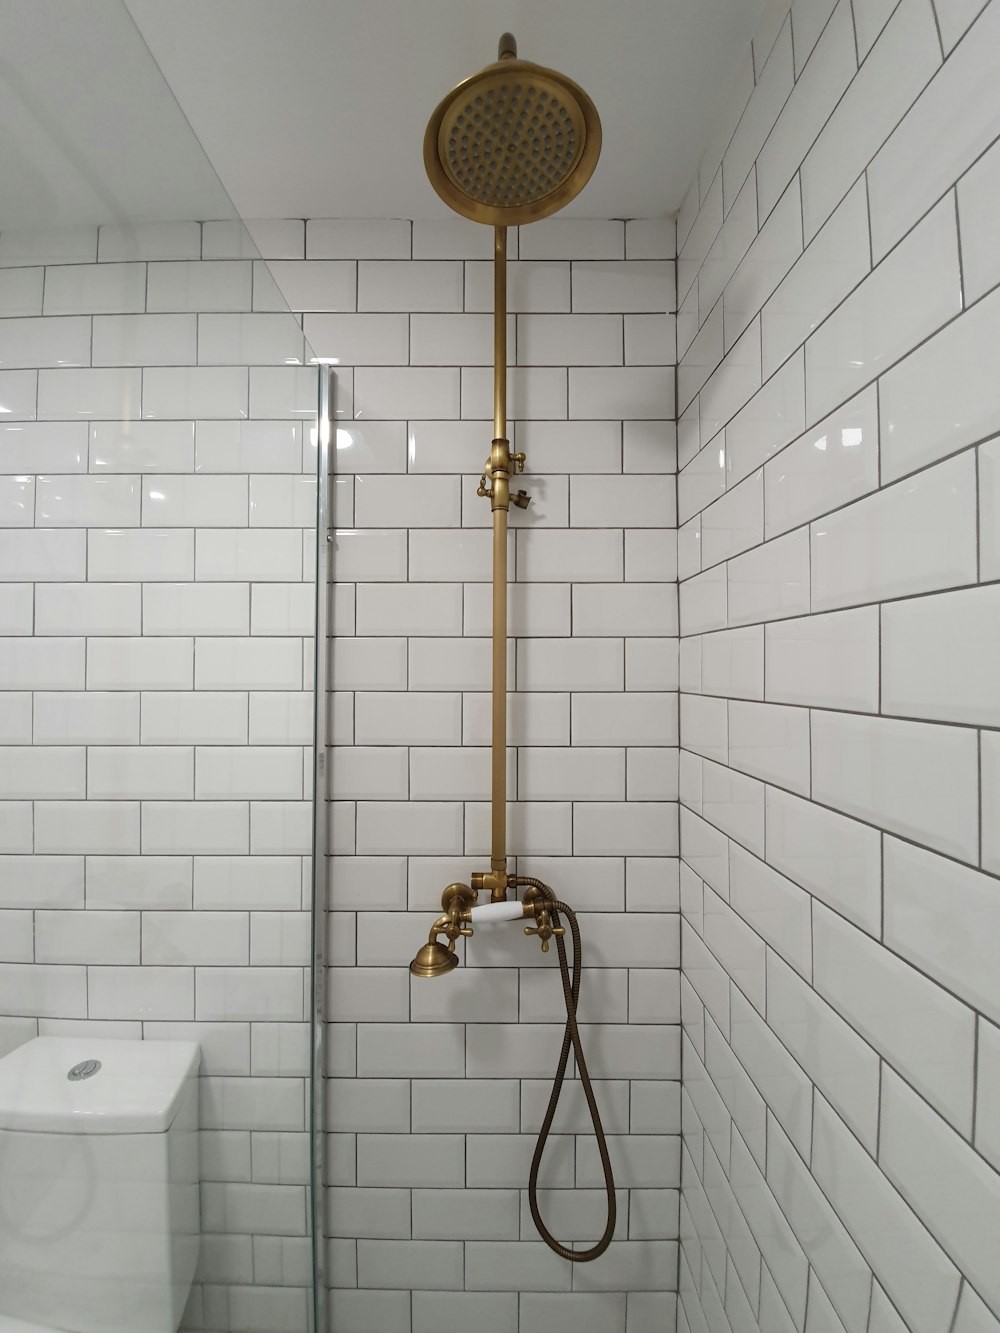 Cabezal de ducha dorado sobre bañera de cerámica blanca